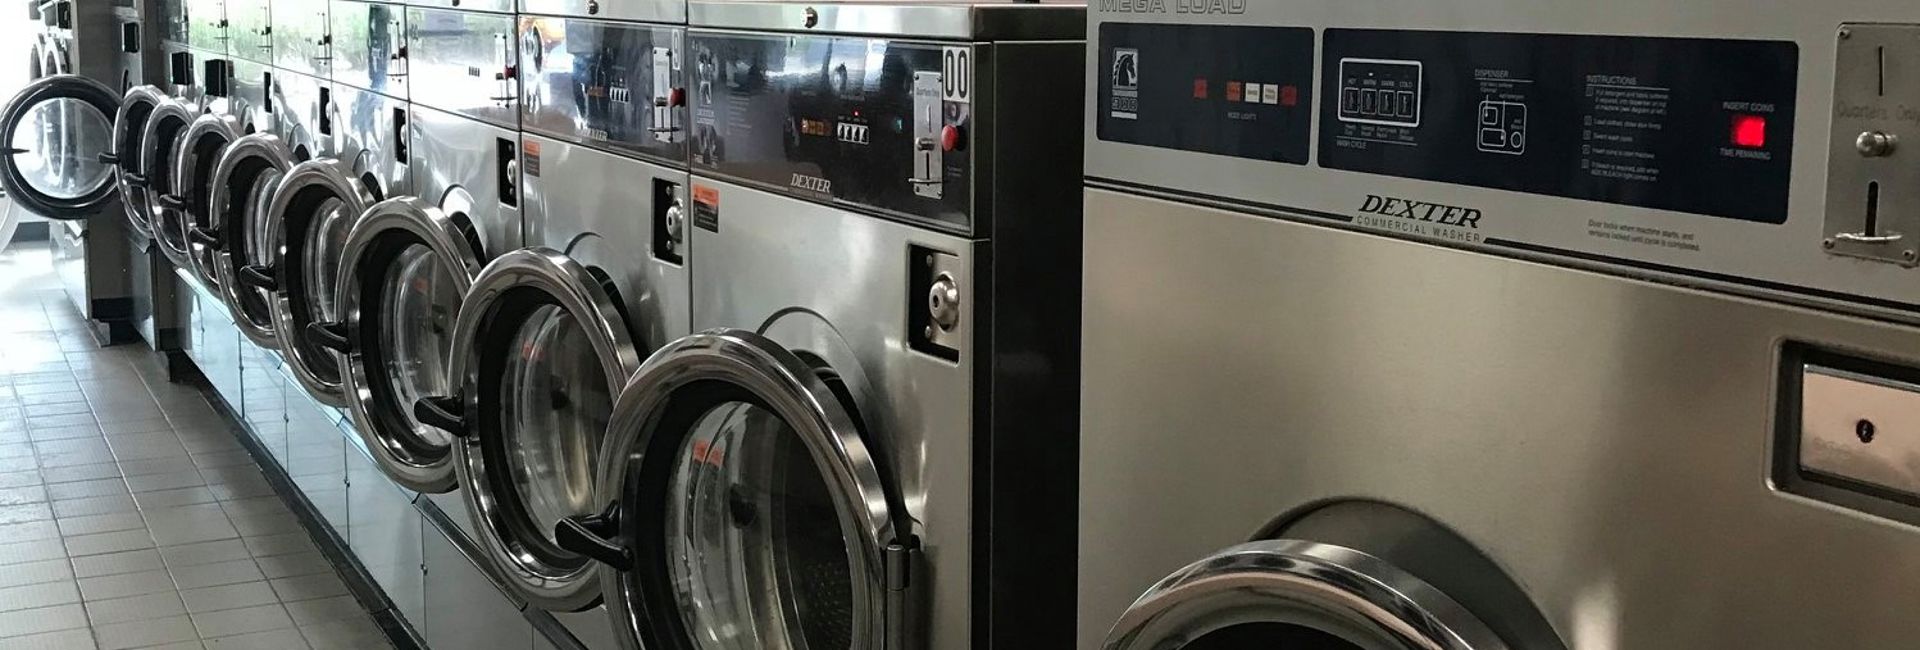 Laundry Pickup Service In Belleair Bluffs